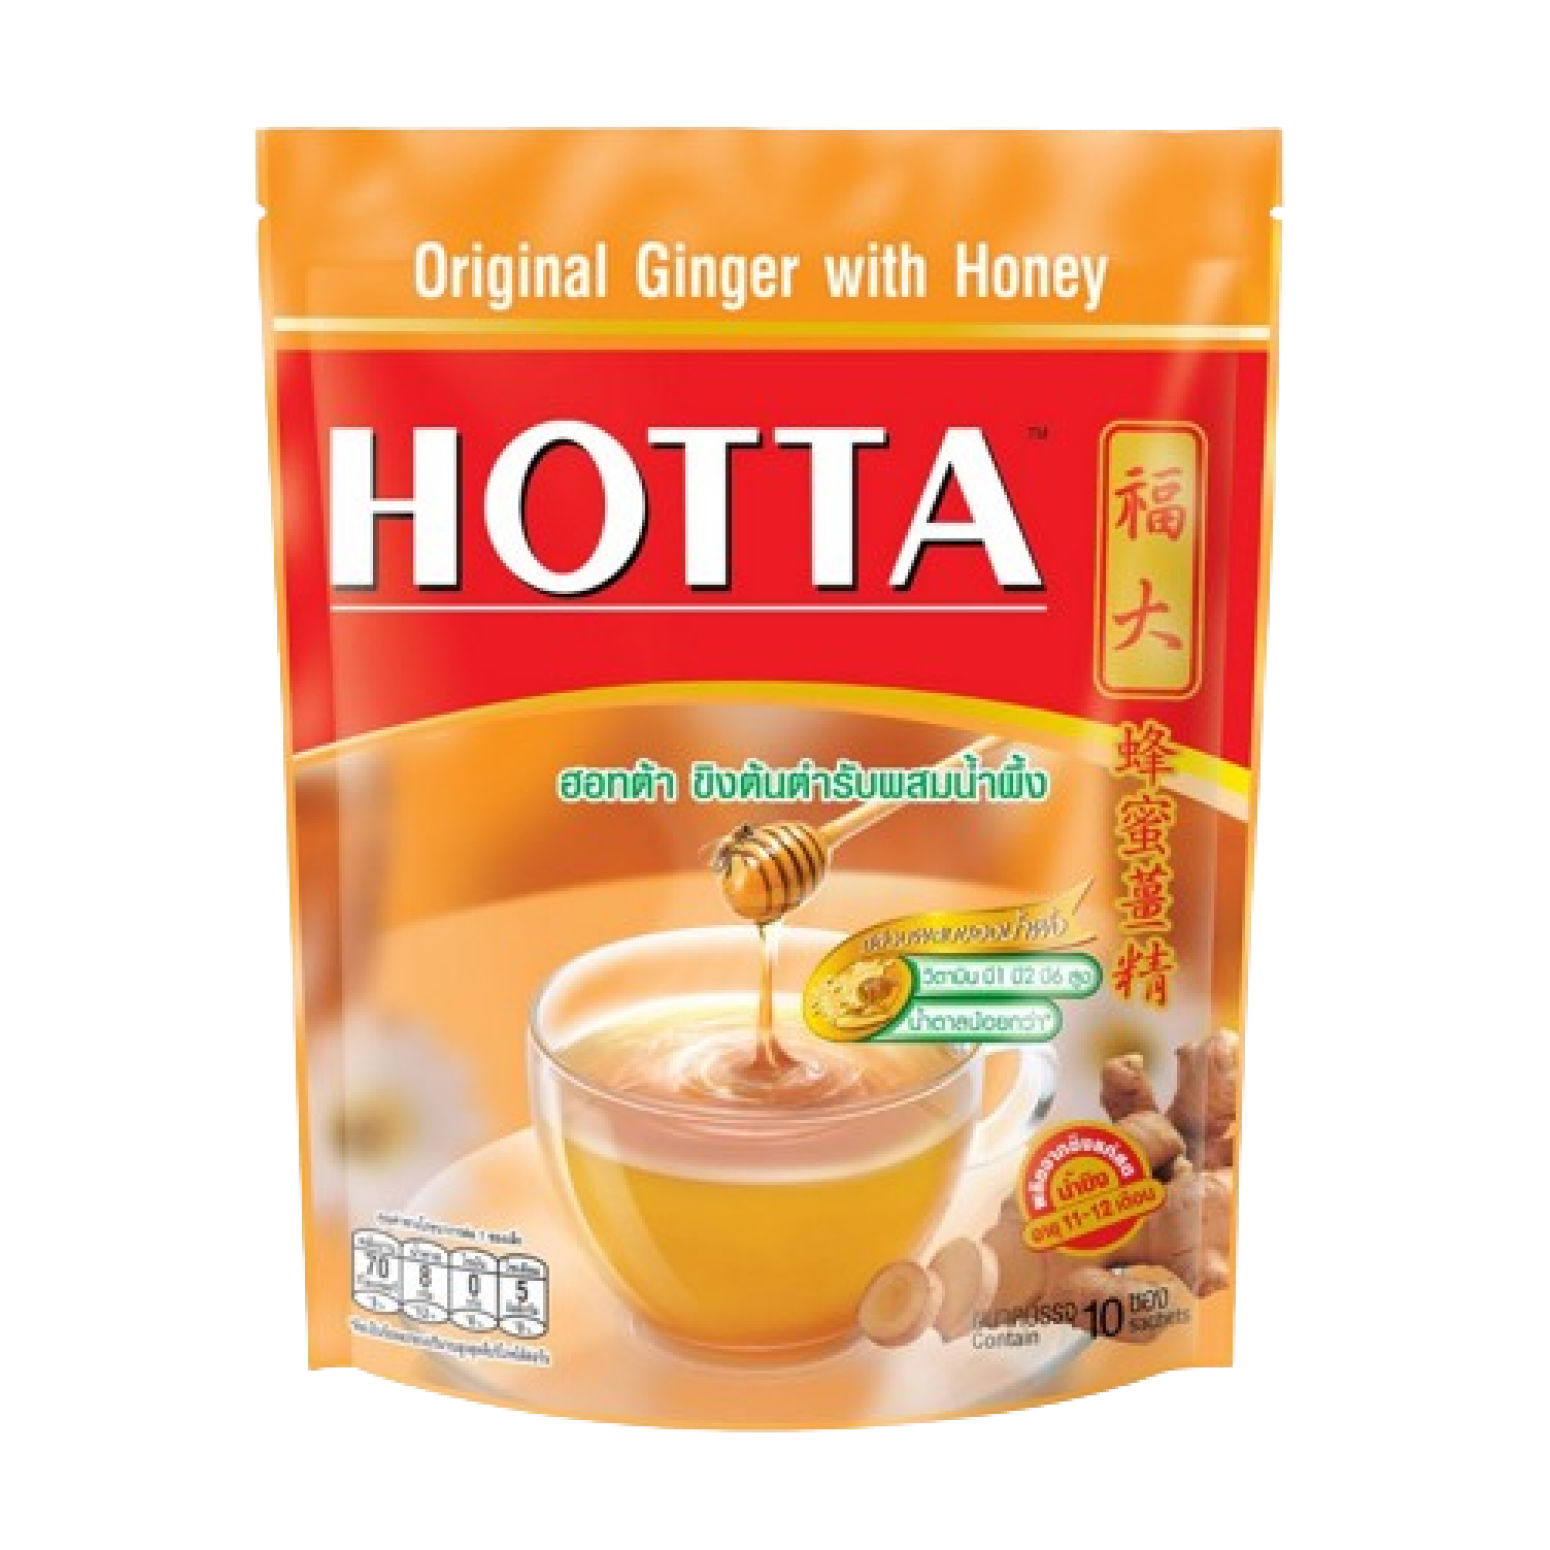 Hotta Original Ginger with Honey Instant 18g. Pack 10sachet